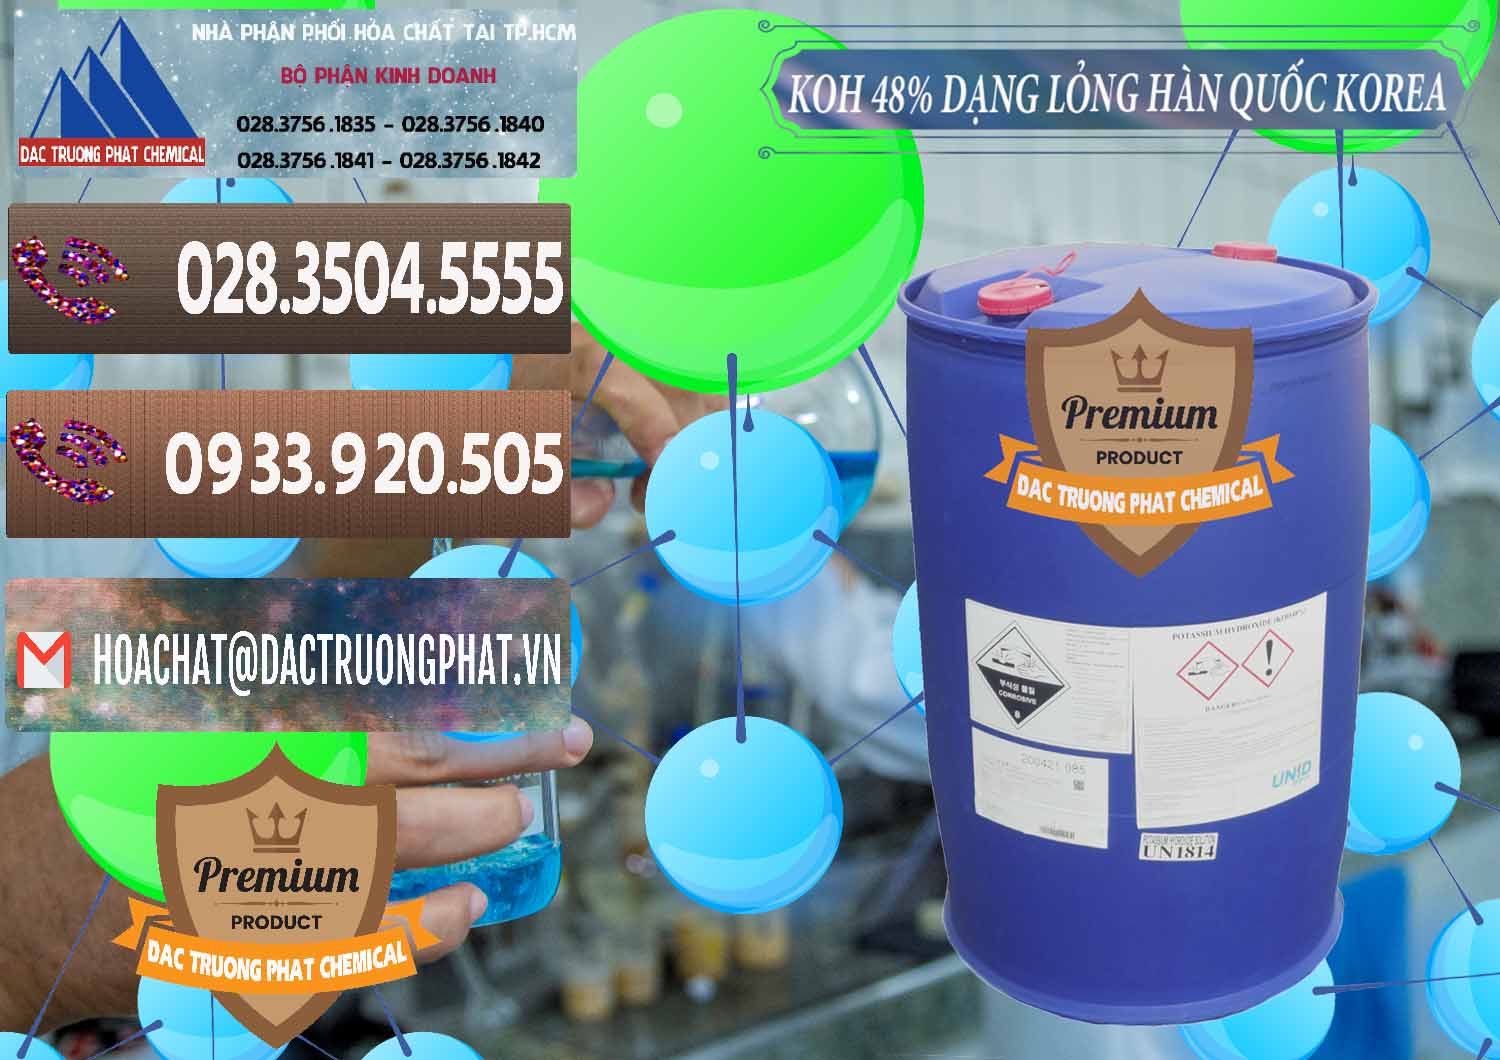 Nơi cung cấp ( bán ) KOH Dạng Nước – Potassium Hydroxide Lỏng 48% Hàn Quốc Korea - 0293 - Chuyên bán - cung cấp hóa chất tại TP.HCM - hoachatviet.net